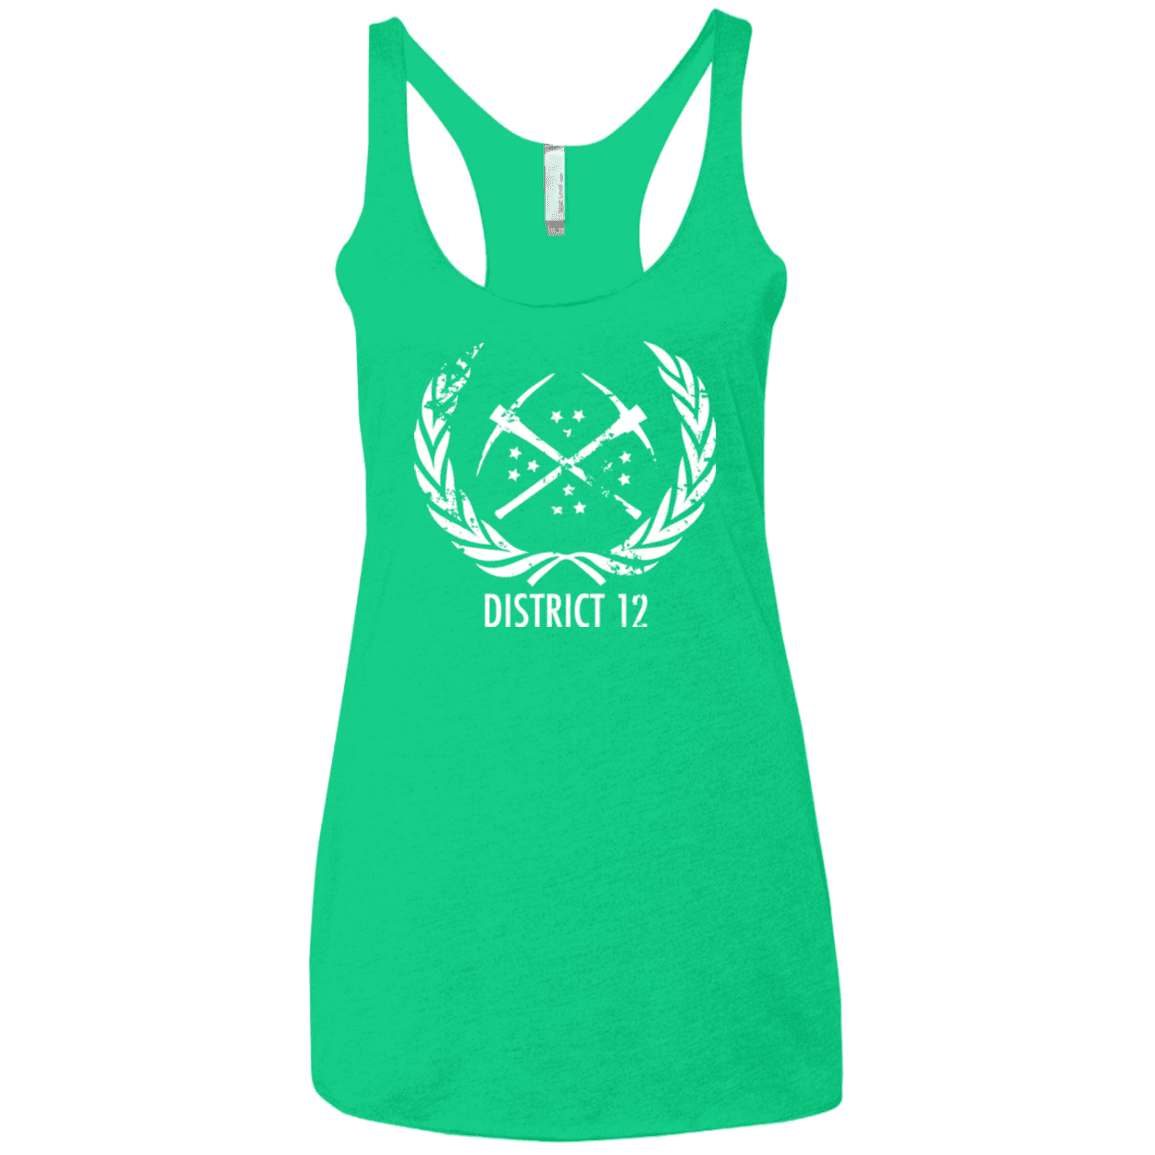 T-Shirts Envy / X-Small District 12 Women's Triblend Racerback Tank